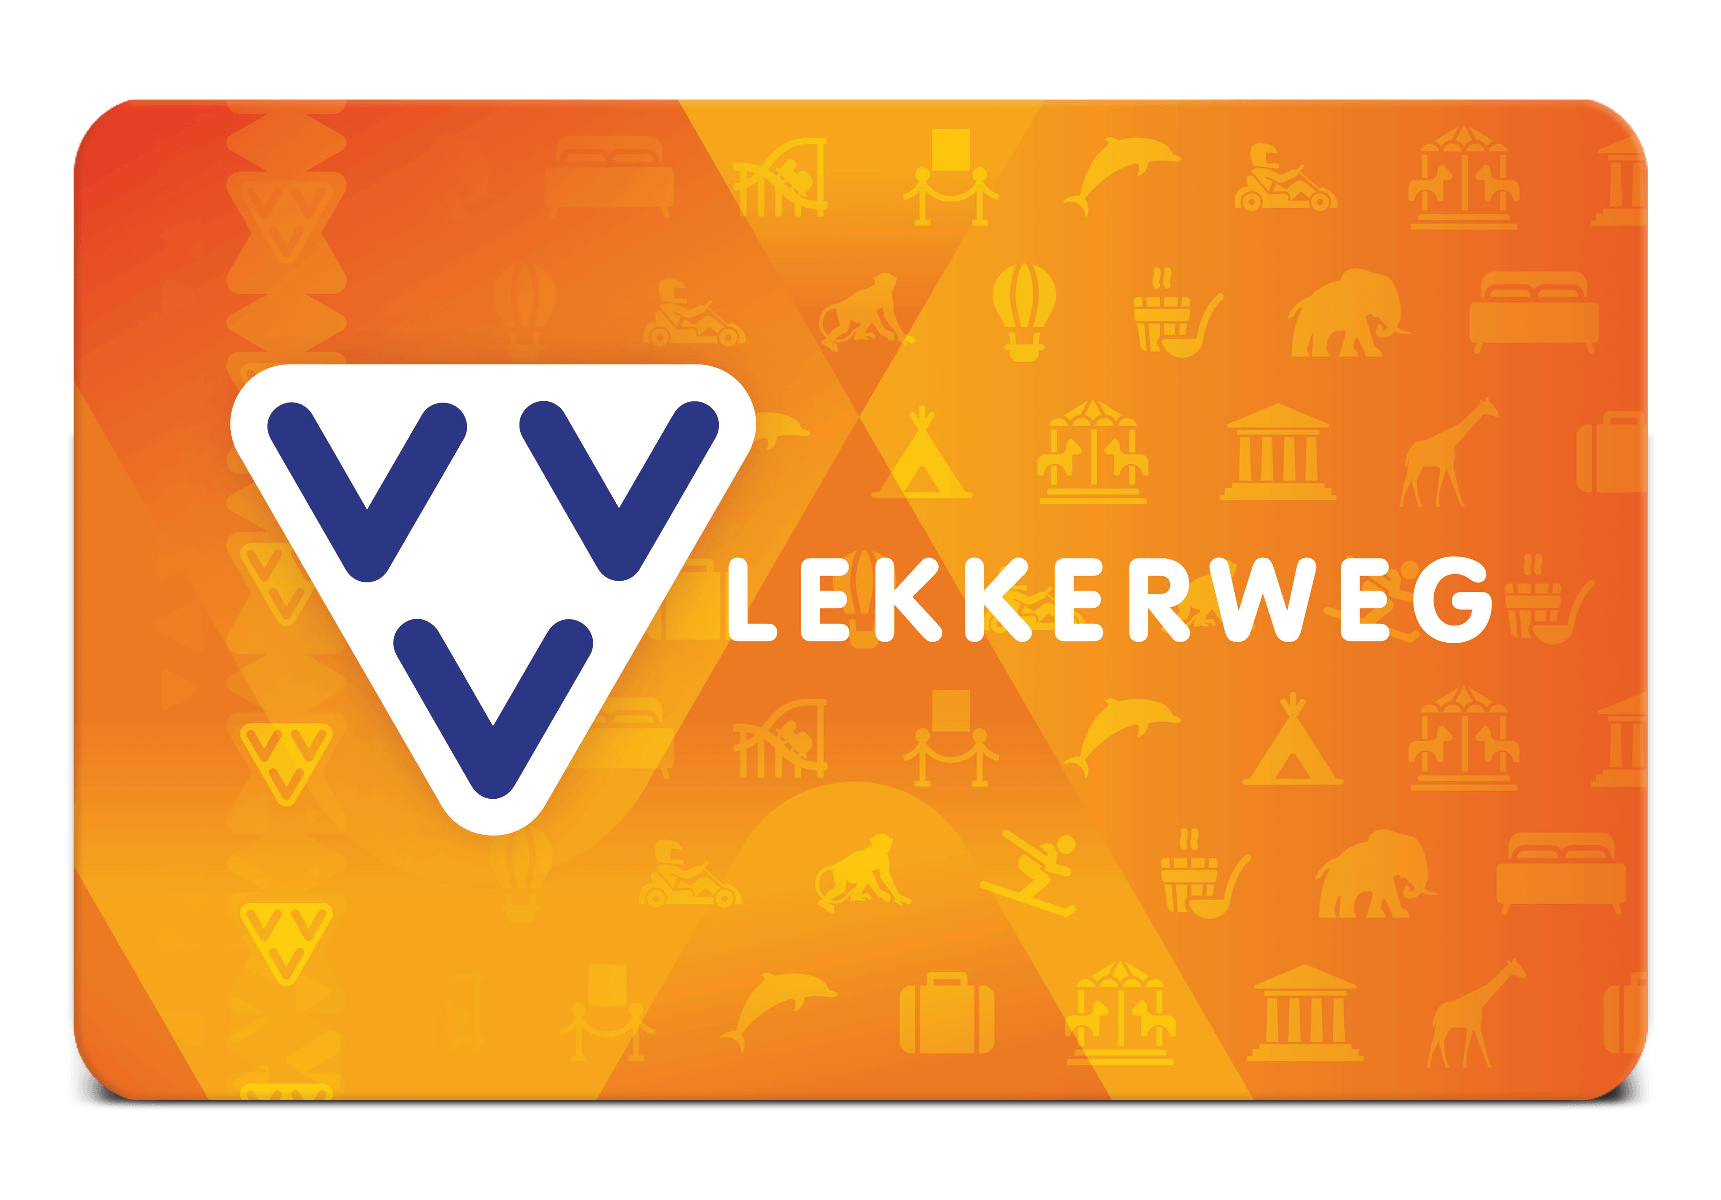 VVV Lekkerweg cadeaukaart